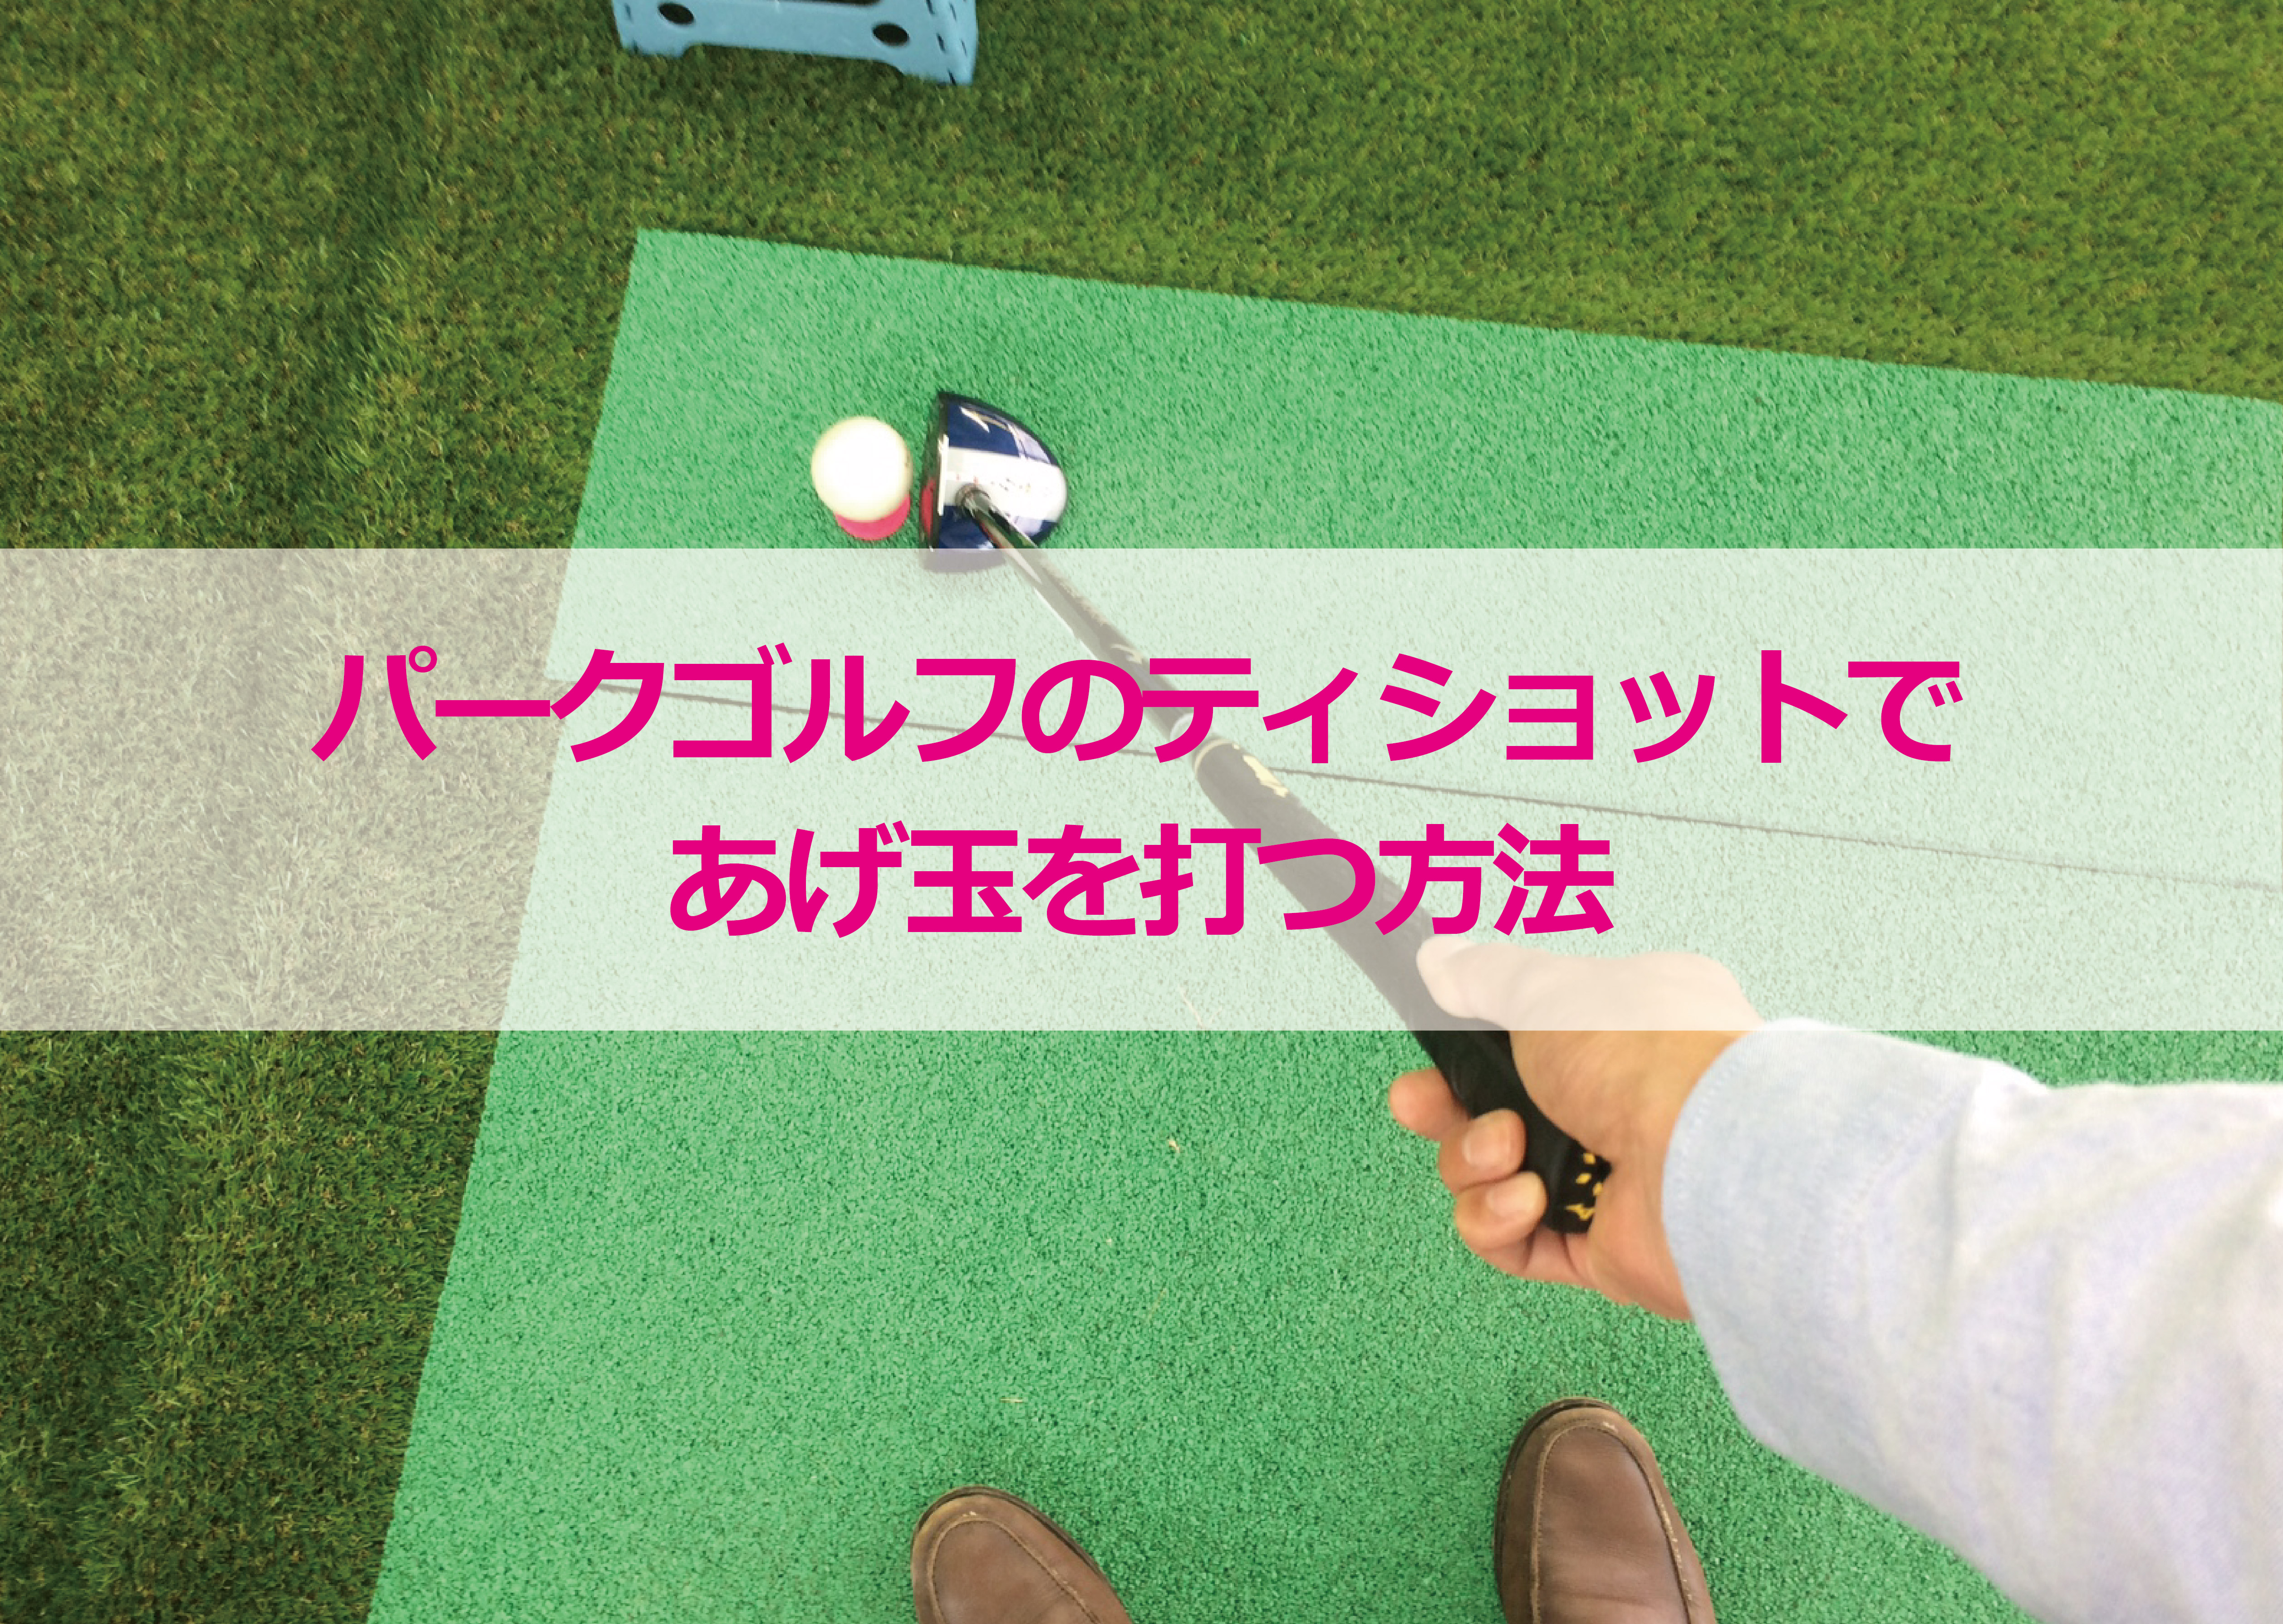 パークゴルフのティショットであげ玉を打つ方法 富山パークゴルフ情報